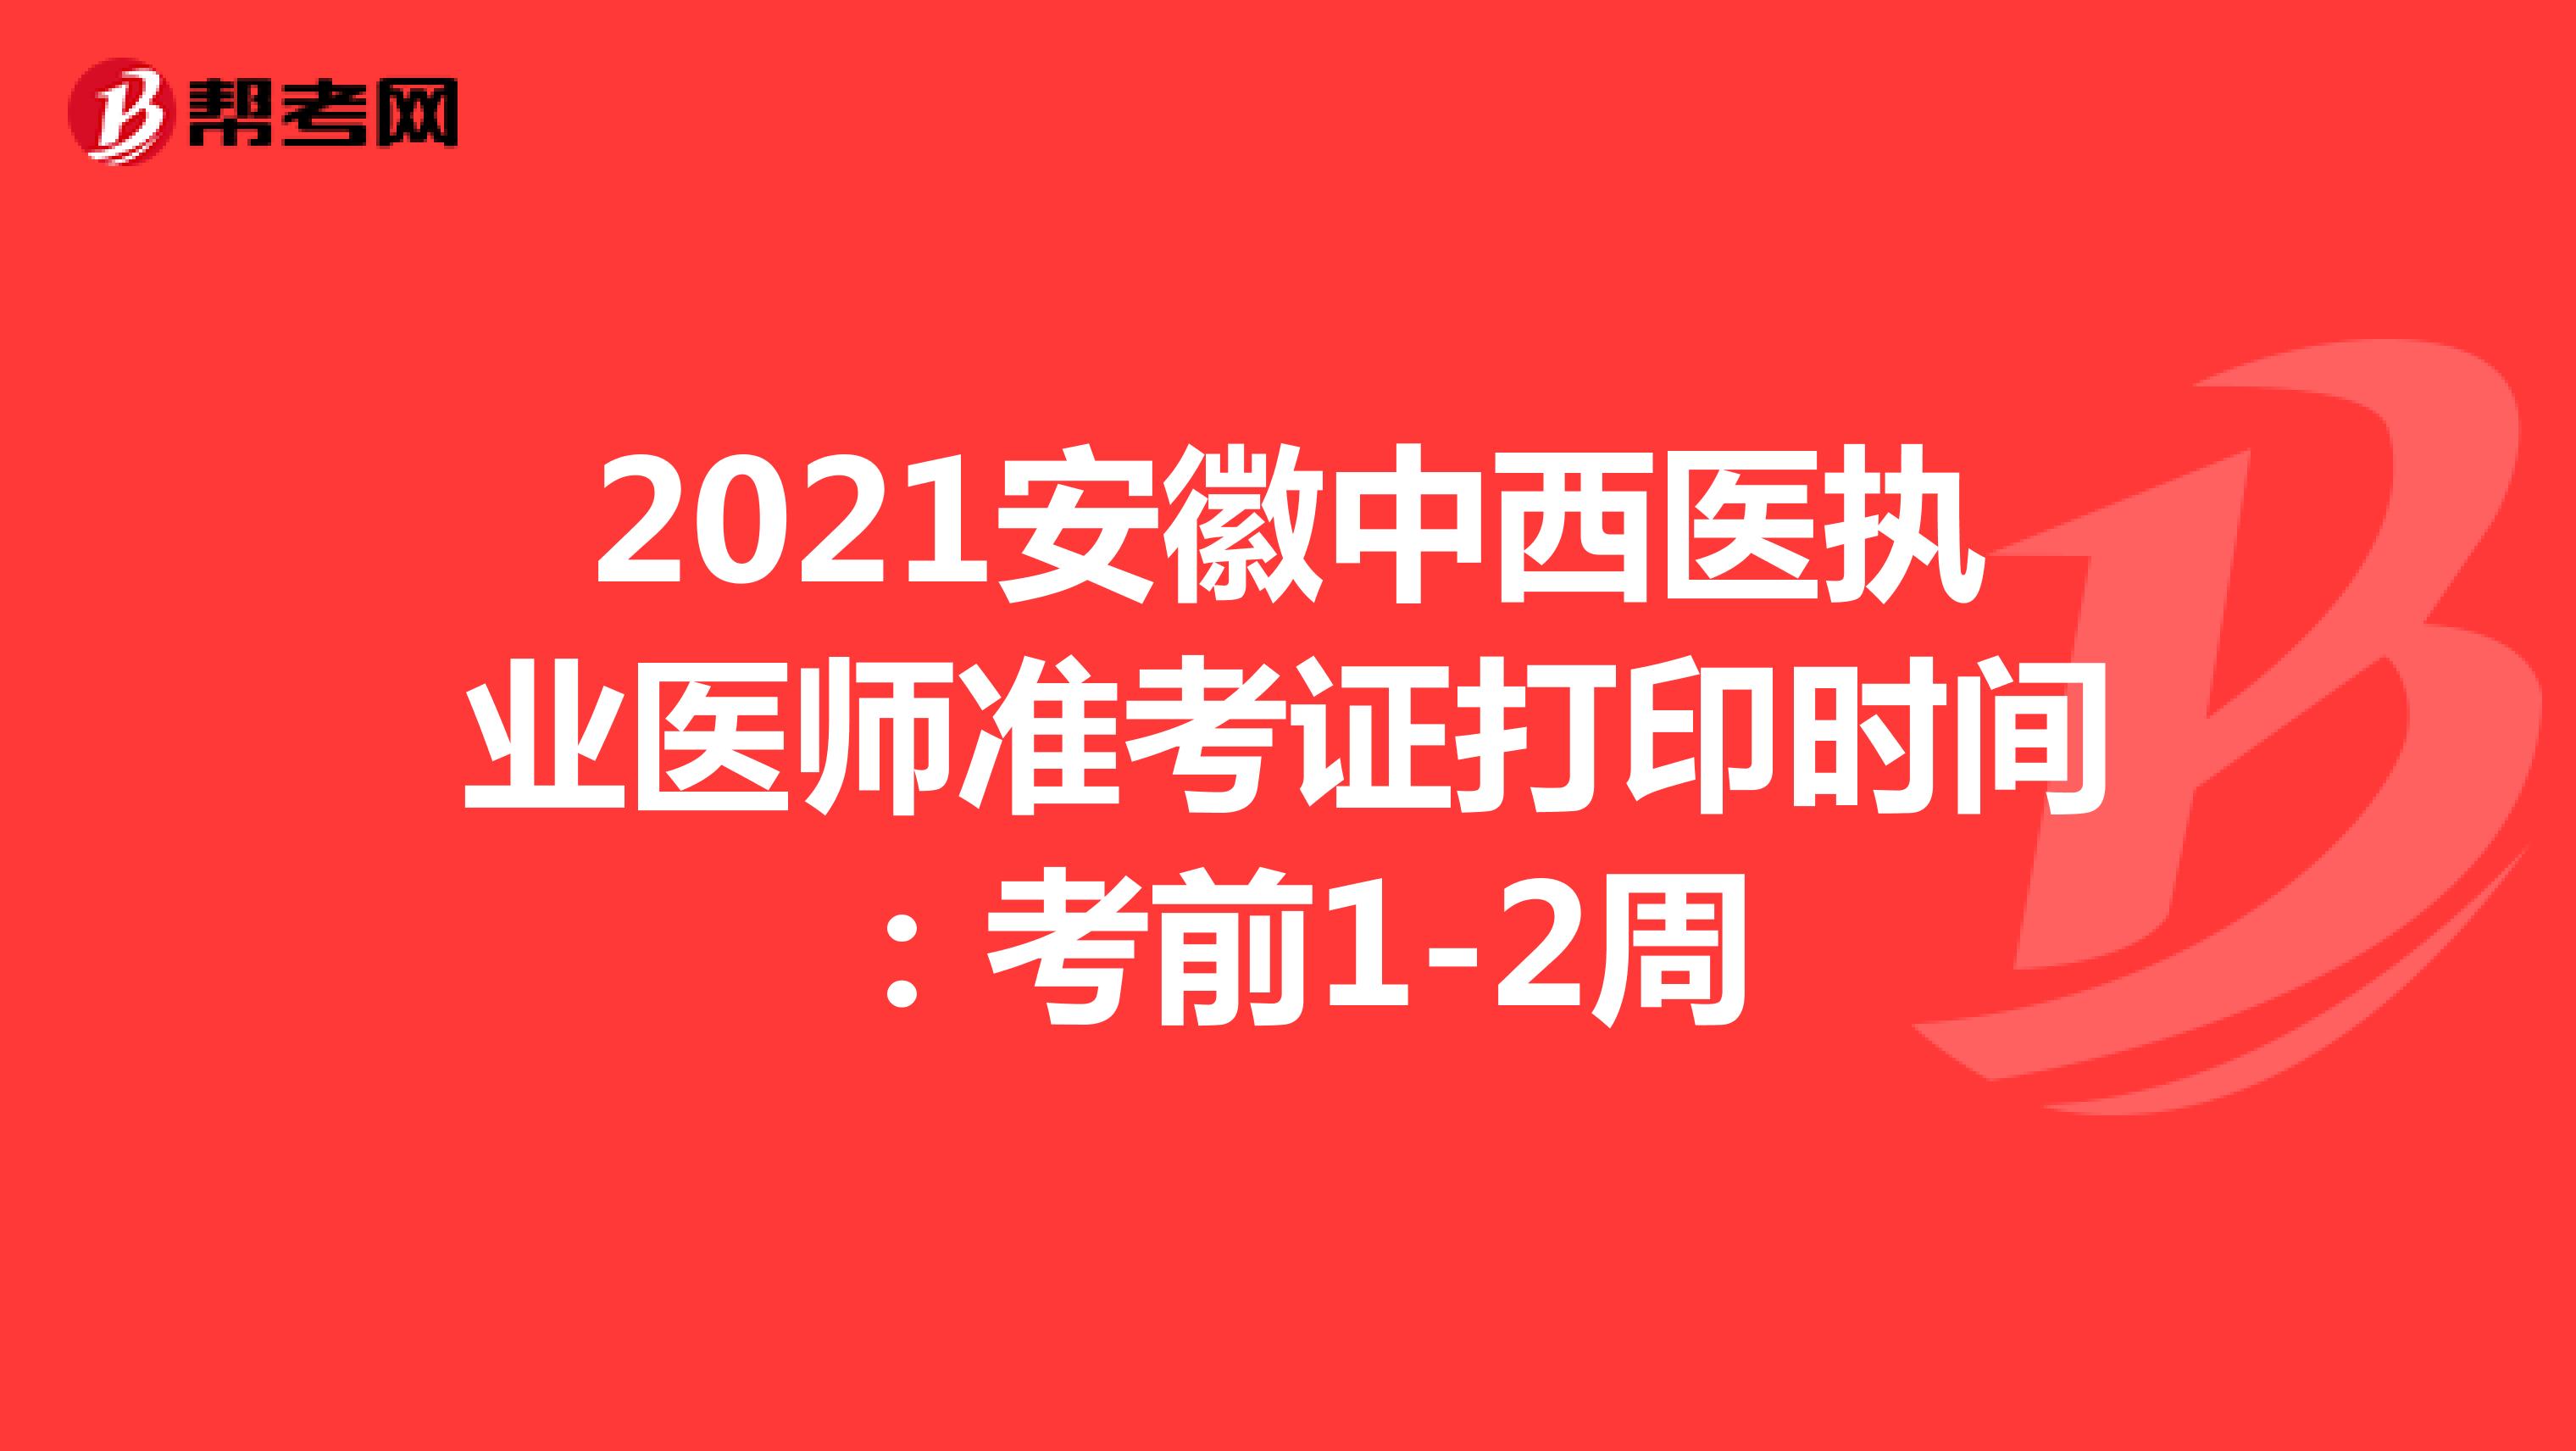 2021安徽中西医执业医师准考证打印时间：考前1-2周